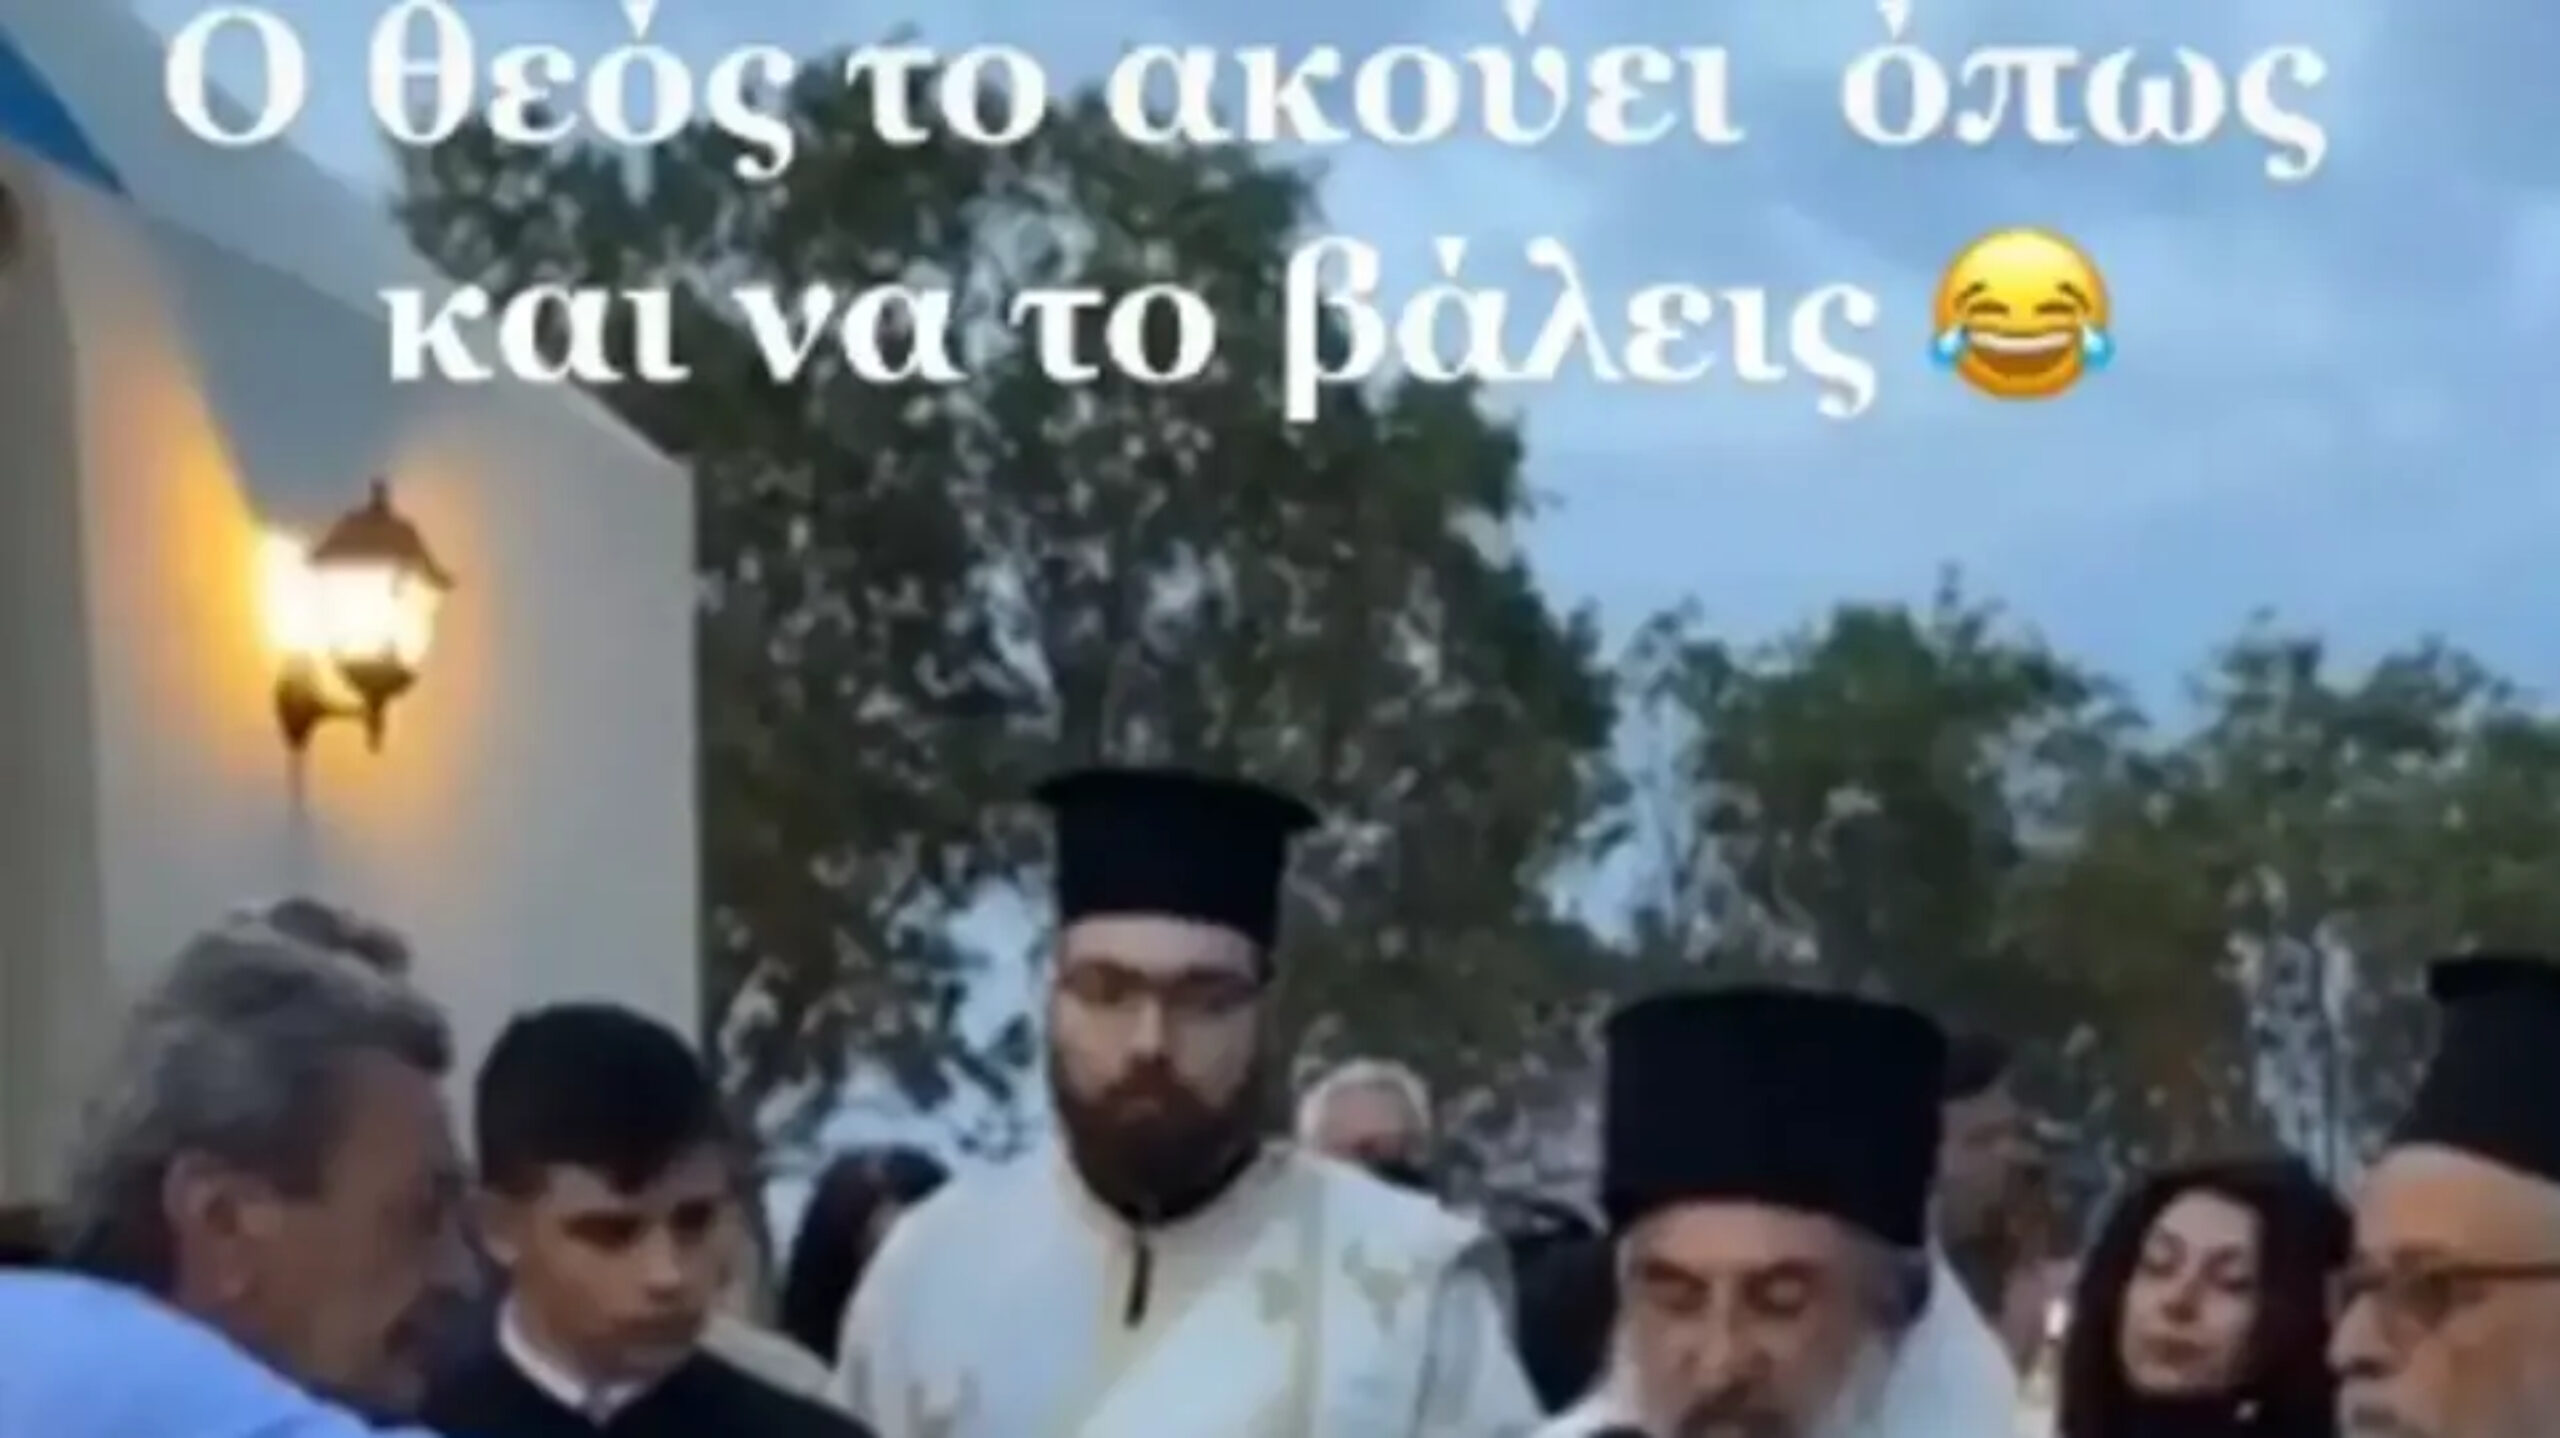 Viral η ατάκα του Αρχιεπισκόπου Κρήτης: «Ο Θεός το ακούει όπως και να το βάλεις»